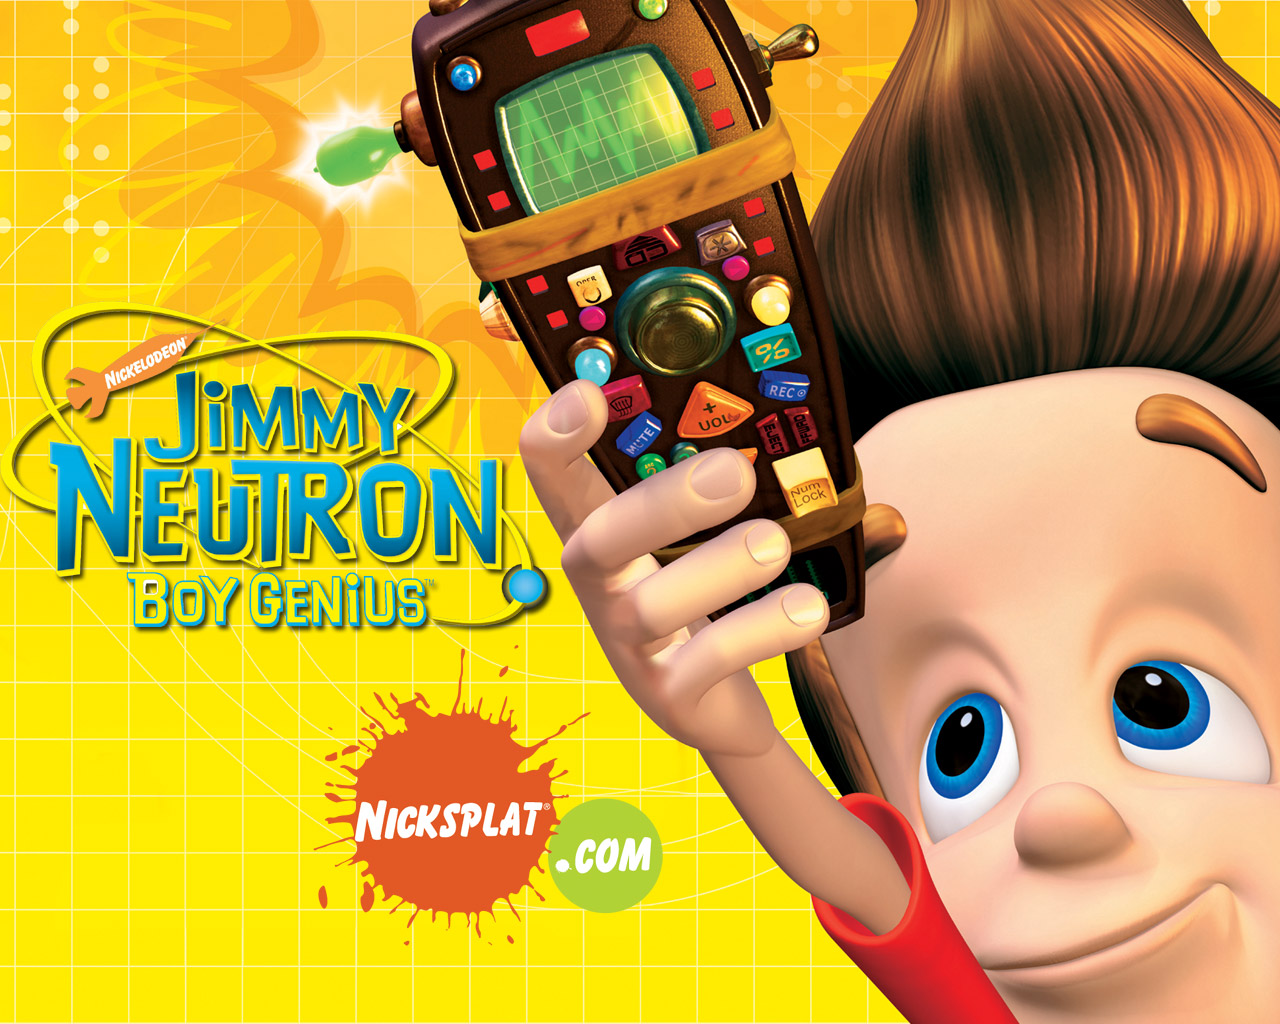 Jimmy Neutron: Boy Genius 2001 - IMDb